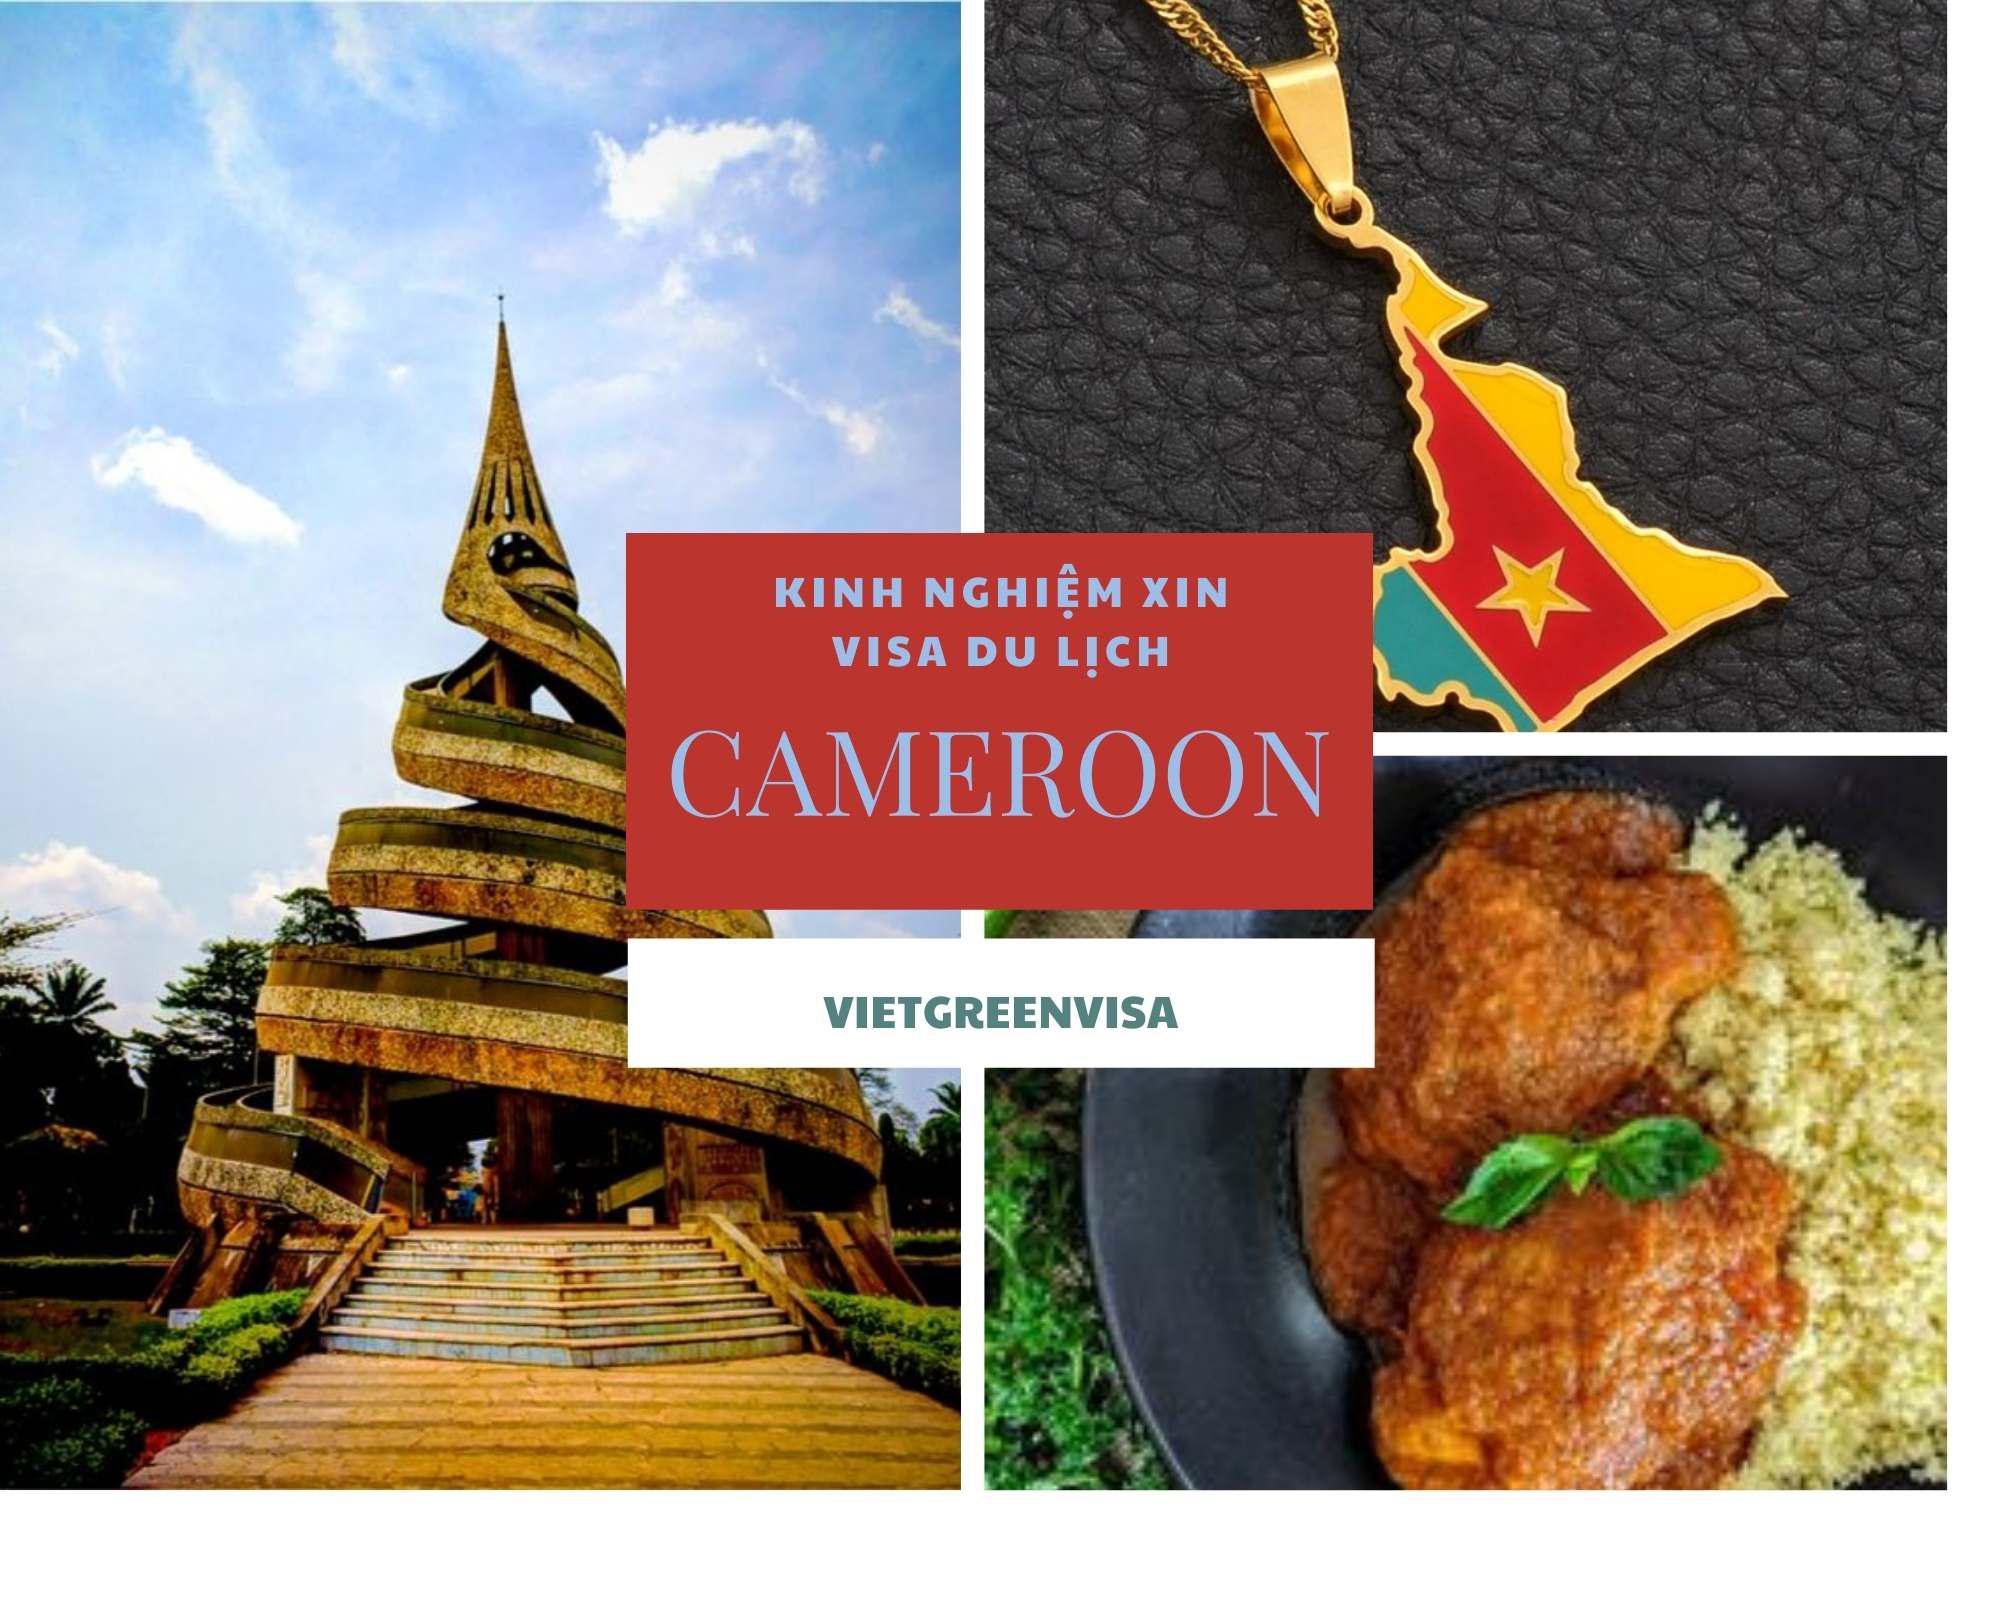 Hướng dẫn xin visa du lịch Cameroon chuyên nghiệp